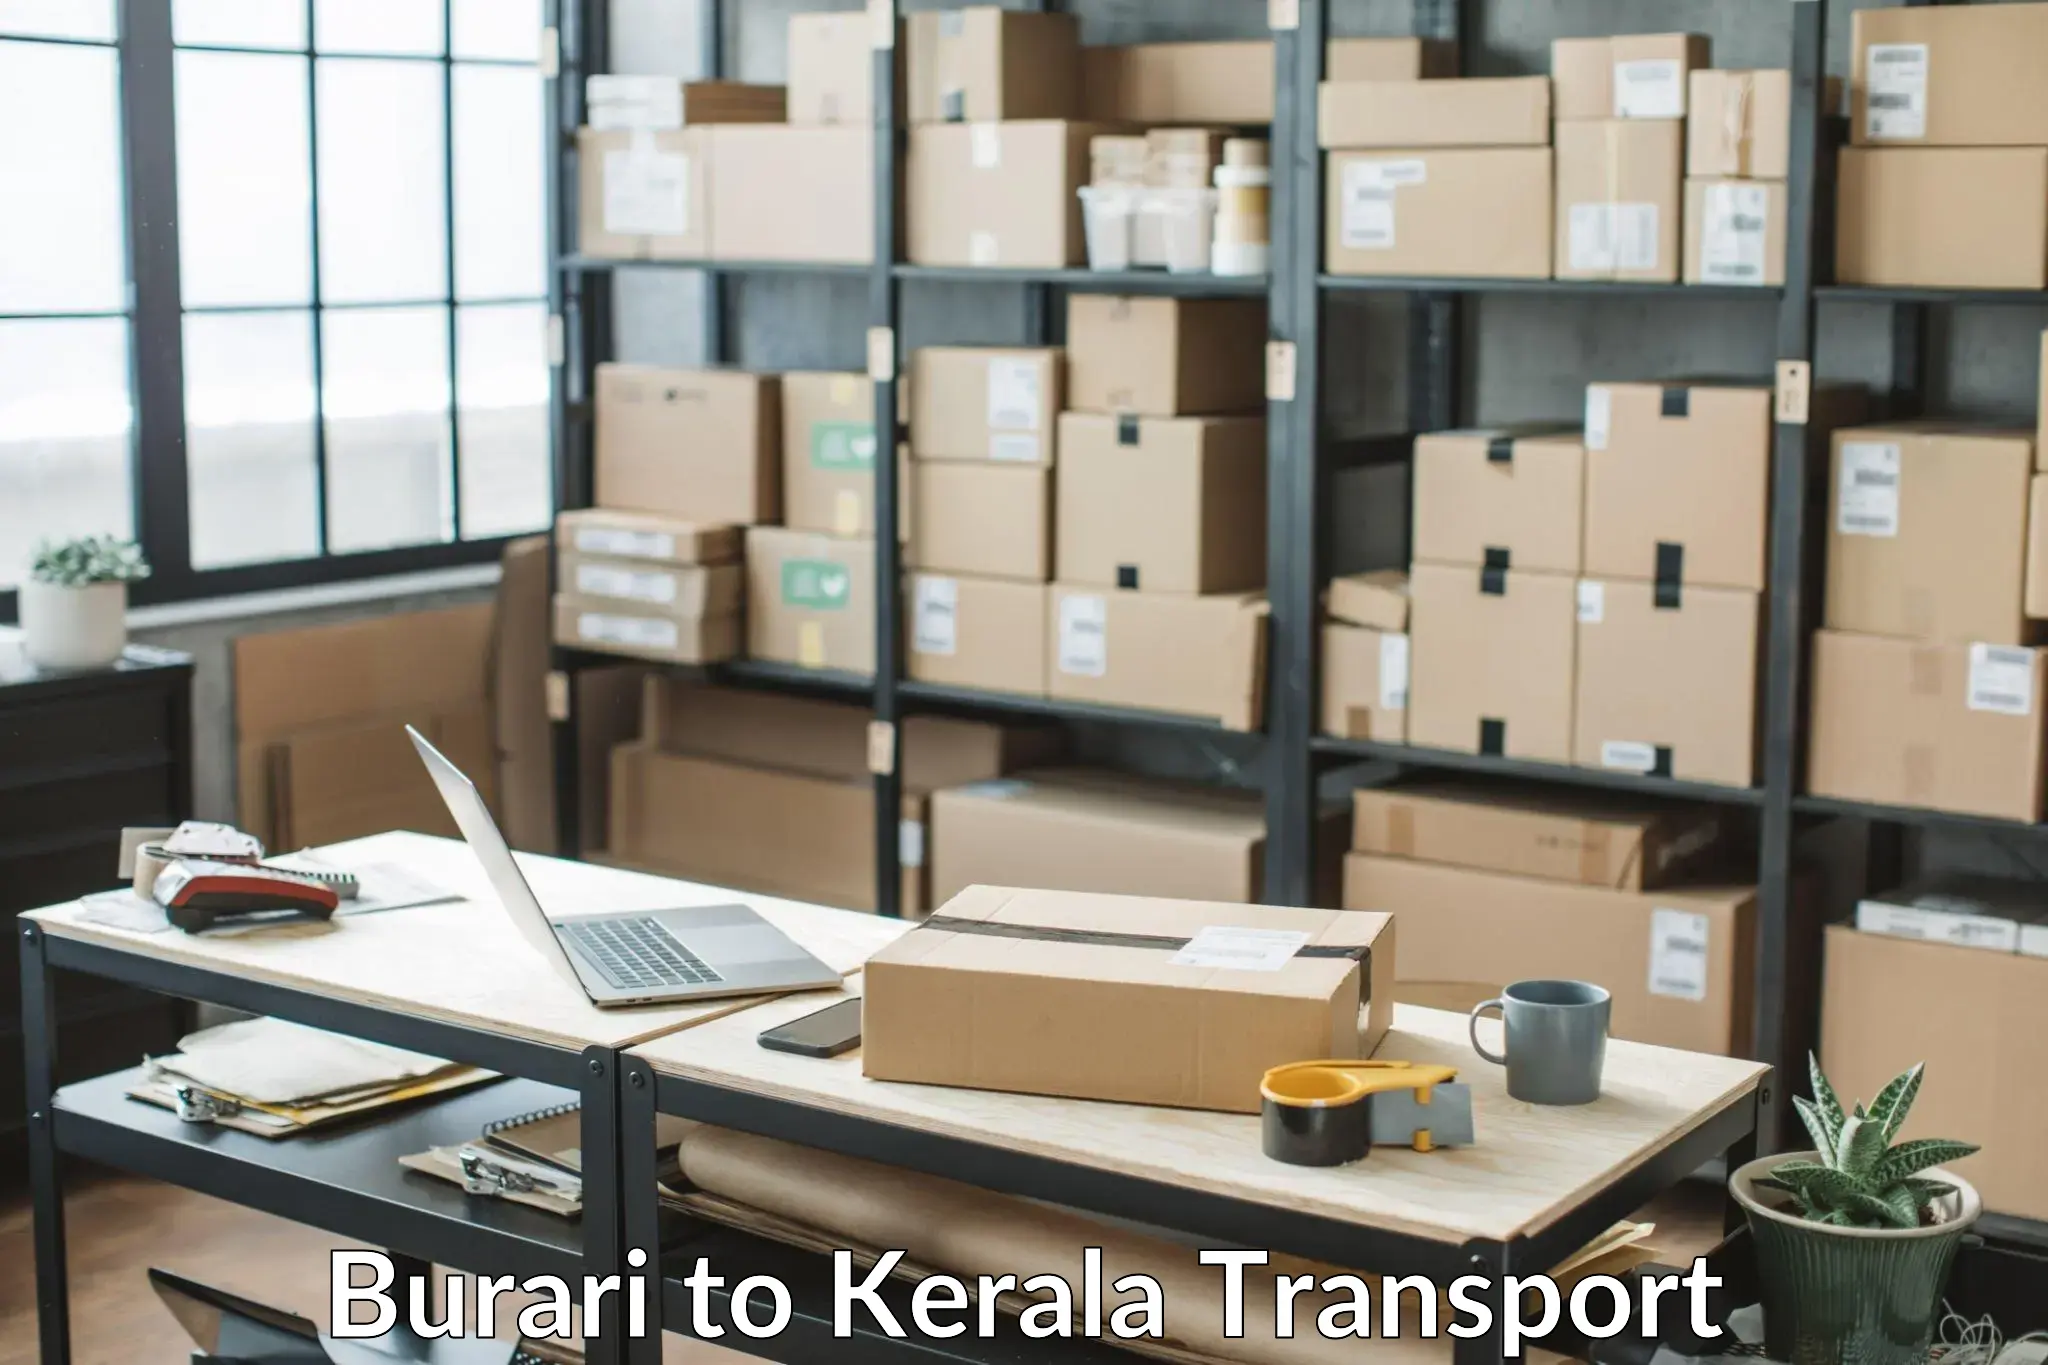 Nearest transport service Burari to Mundakayam